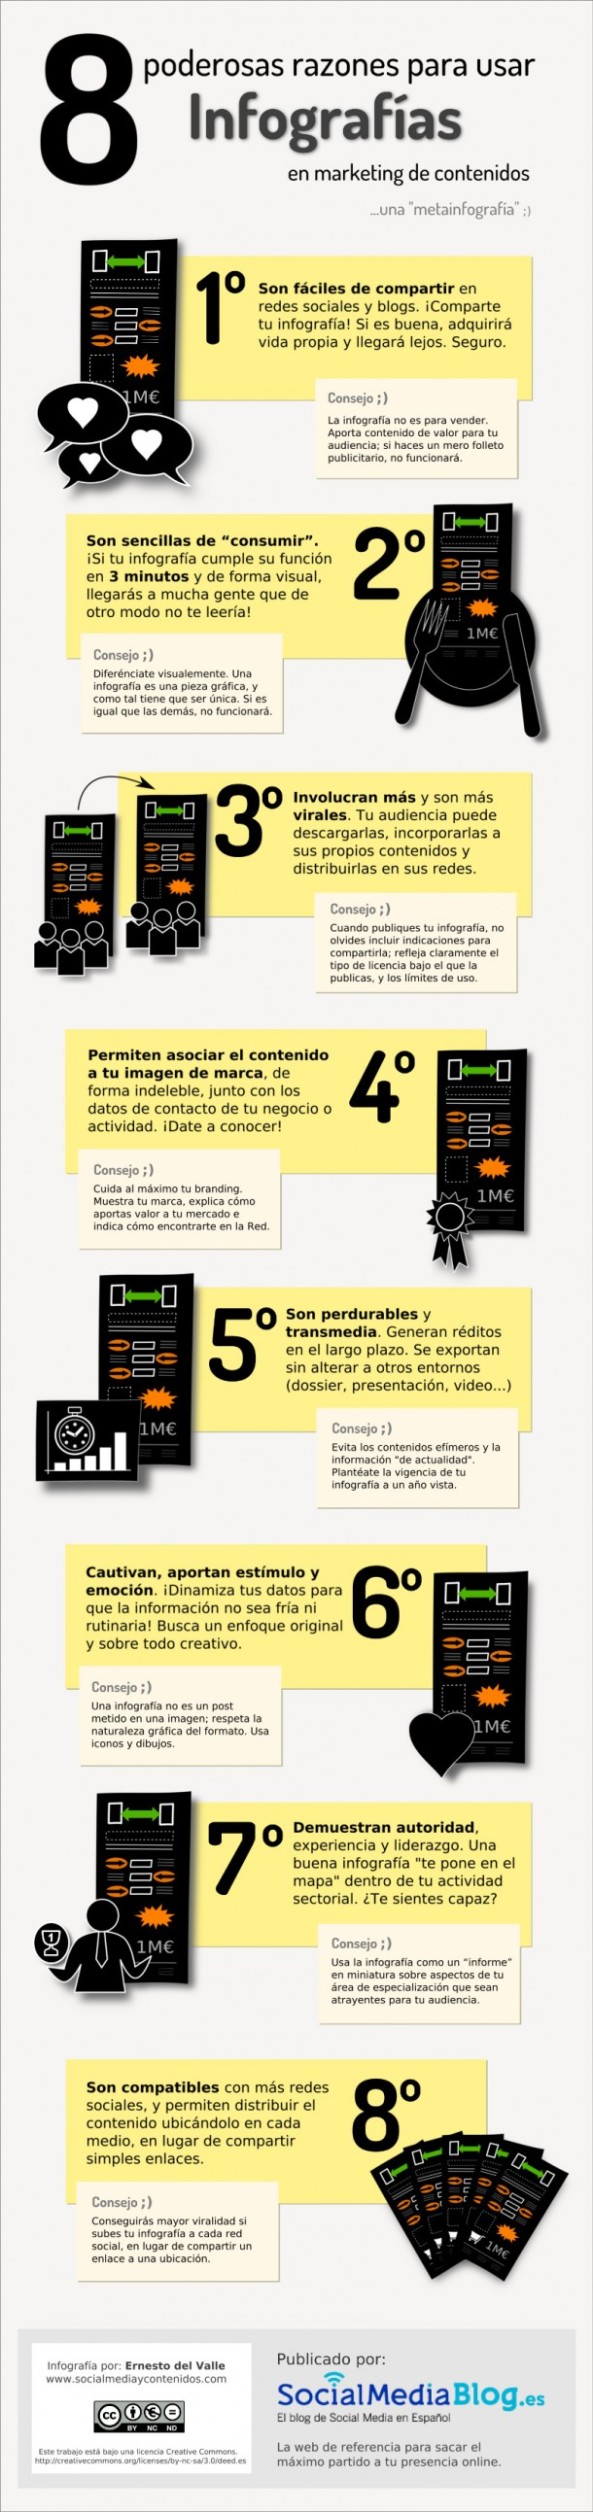 ¡8 buenas razones para utilizar infografías!